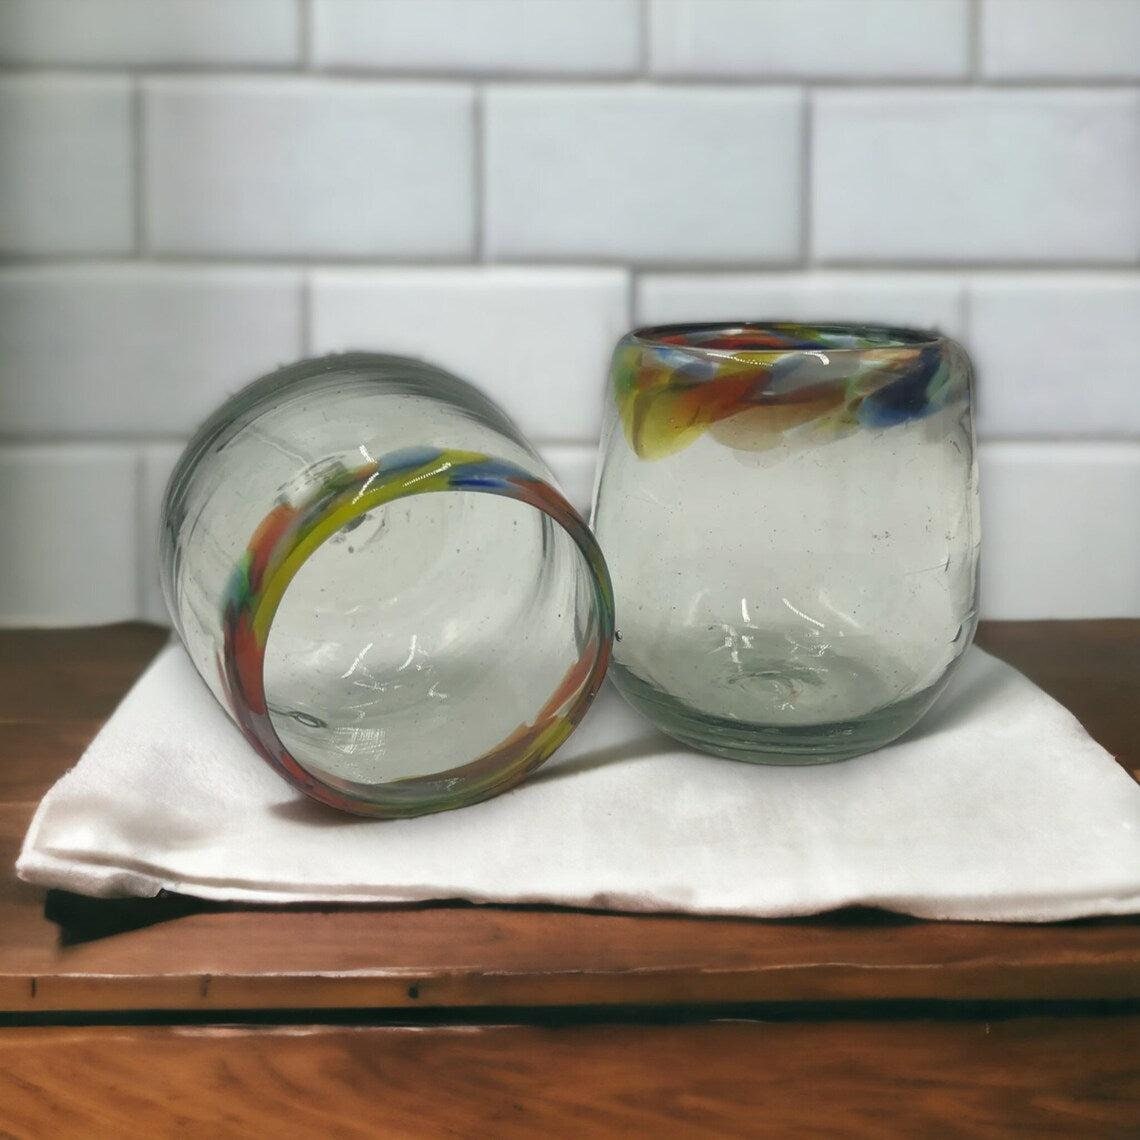 Confetti Rim Hand Blown Stemless Wine Glasses | Colorful Glassware